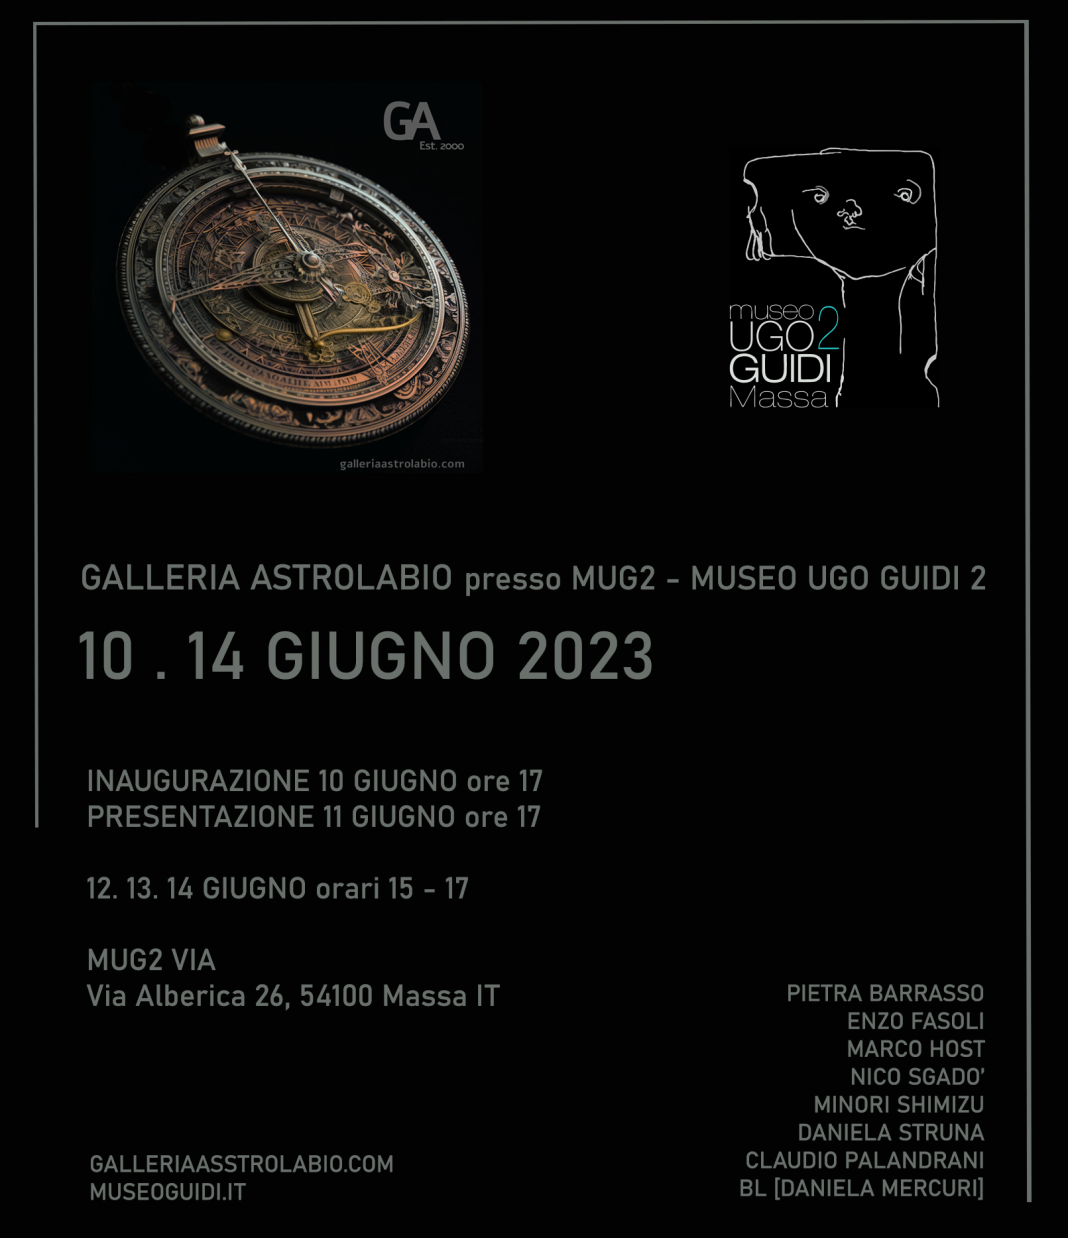 Galleria Astrolabio presso MUG2https://www.exibart.com/repository/media/formidable/11/img/fc7/GALLERIA-ASTROLABIO-MUSEO-UGO-GUIDI9-copia-1068x1238.png